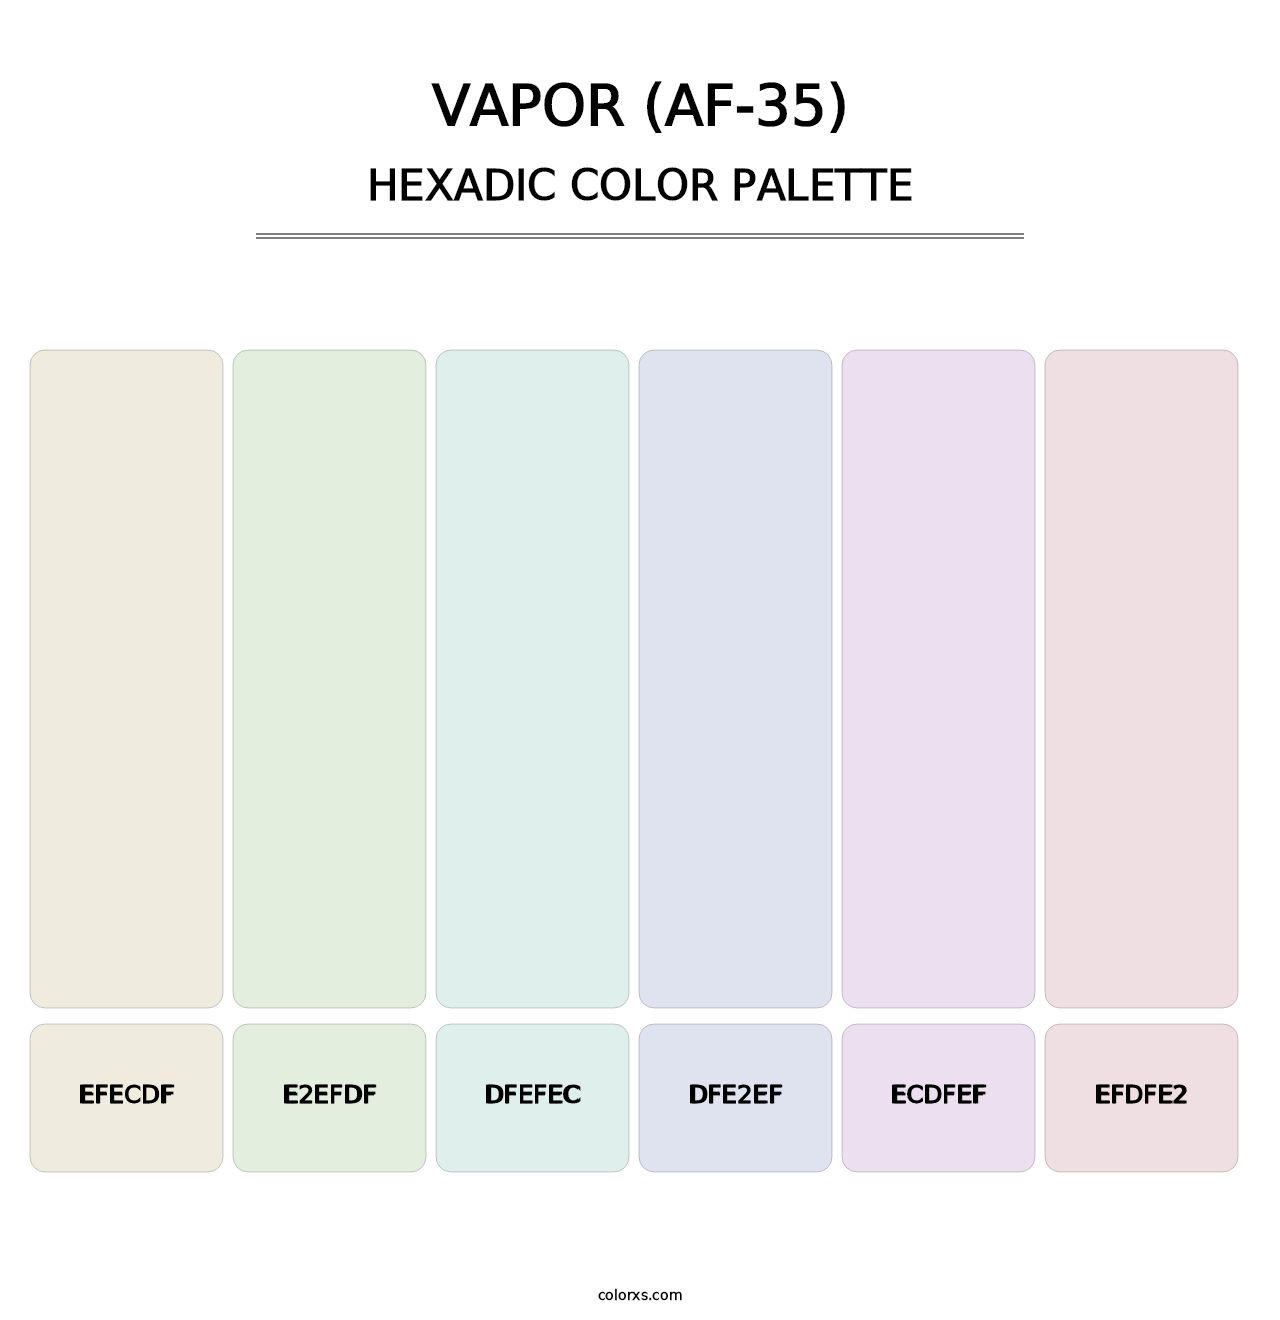 Vapor (AF-35) - Hexadic Color Palette